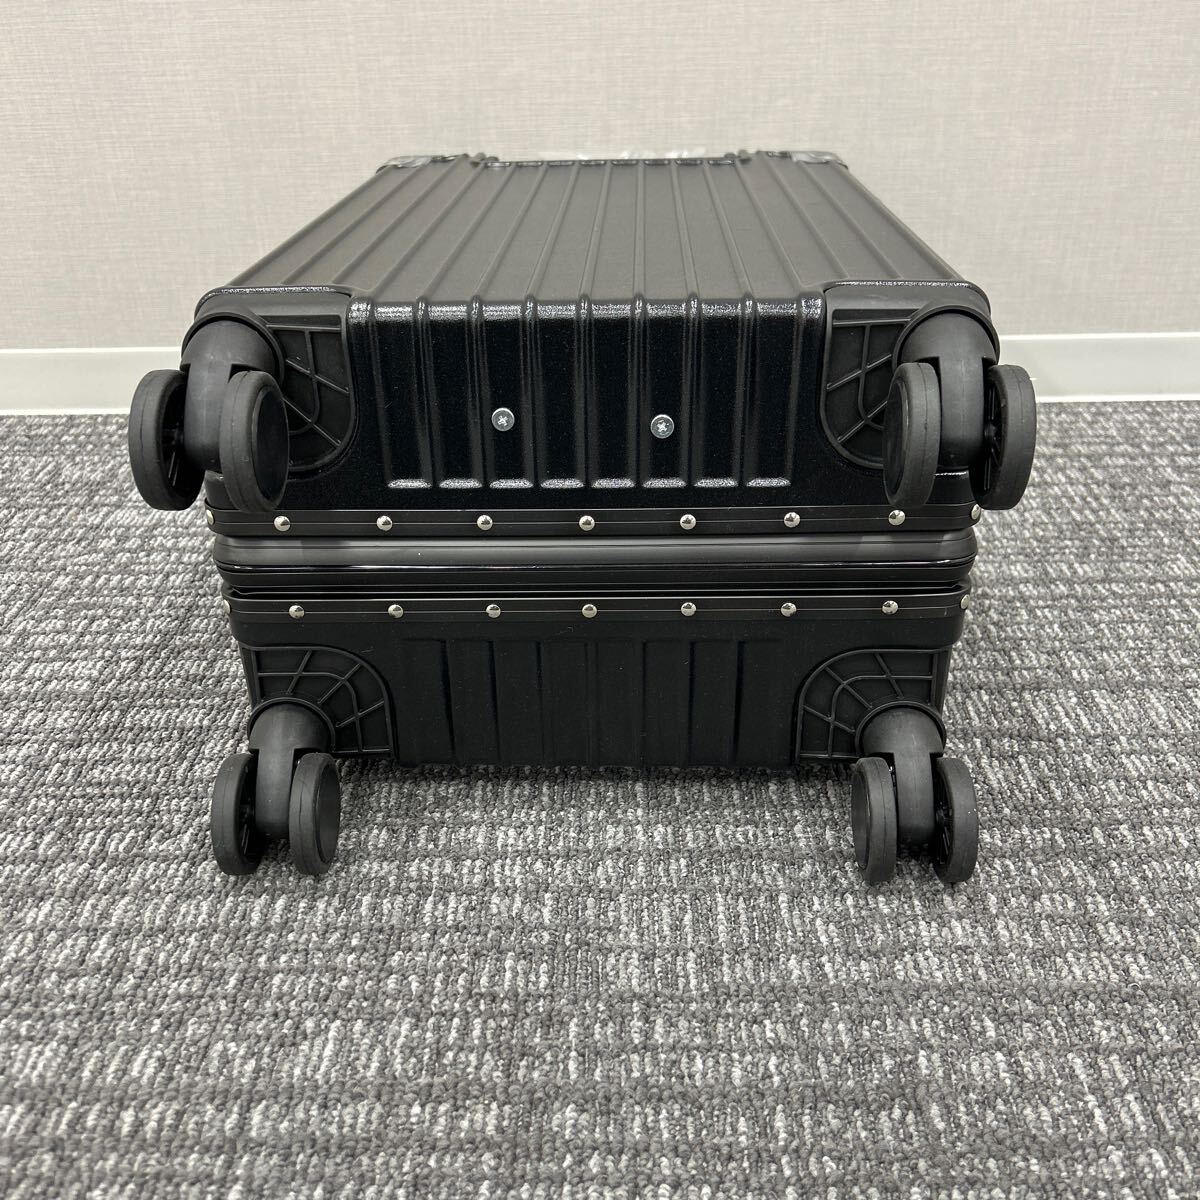  Carry кейс чемодан машина внутри принесенный 40L дорожная сумка черный 